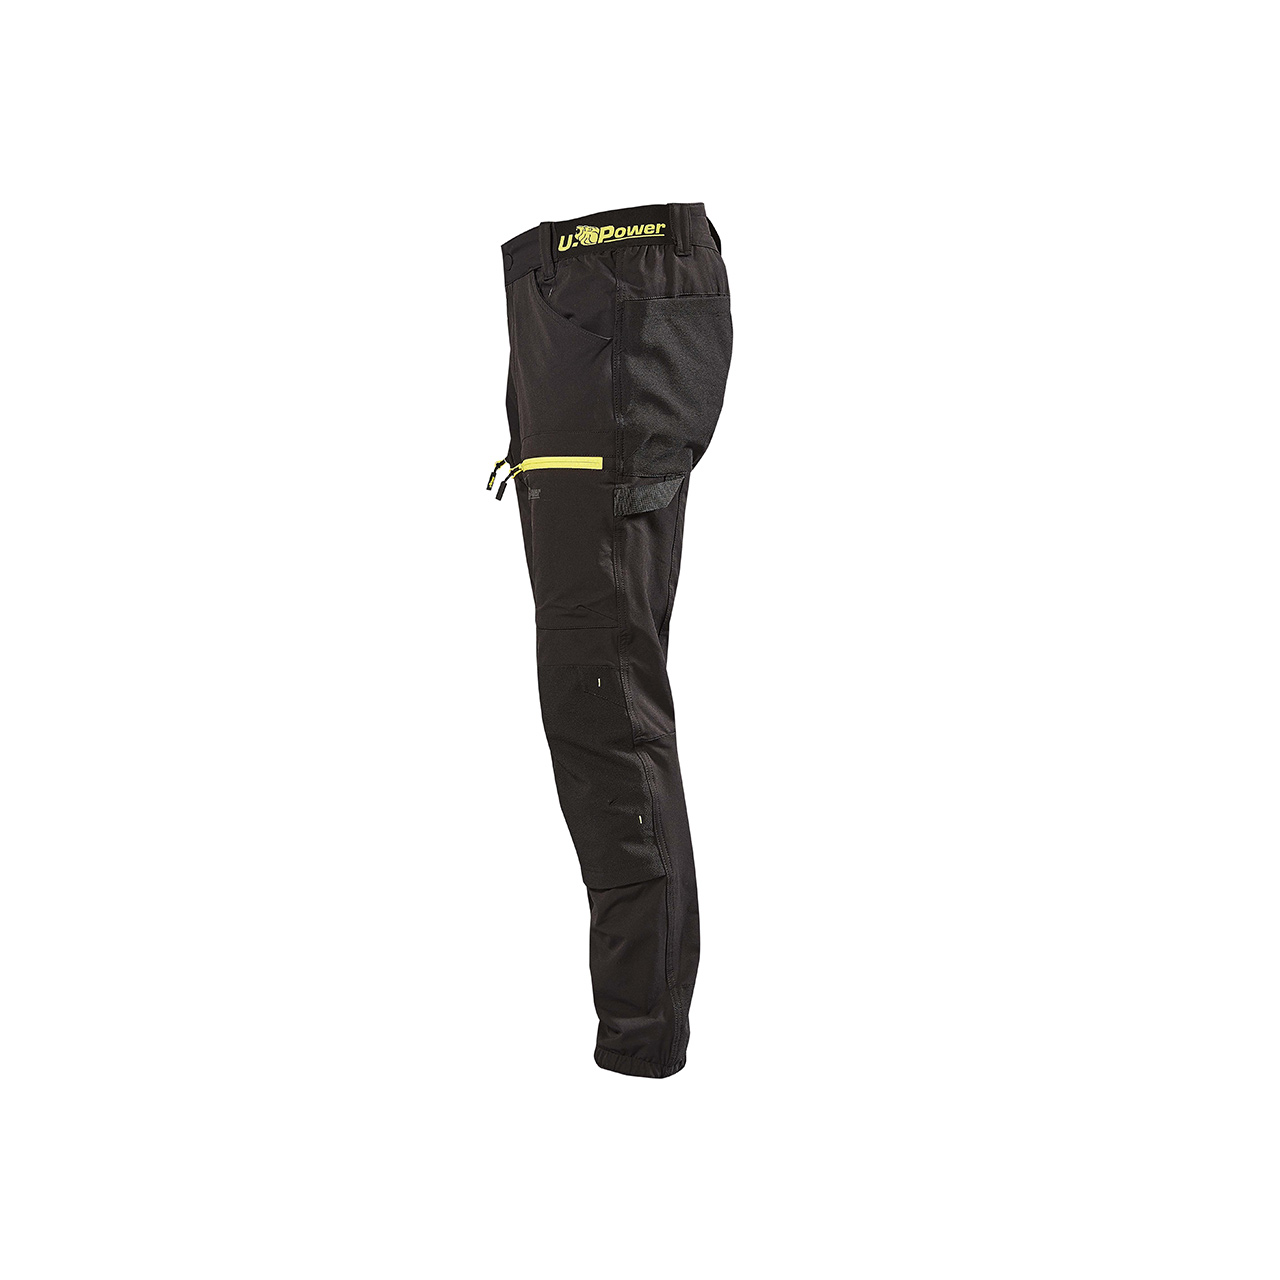 pantalone da lavoro upower modello horizon colore black carbon 2